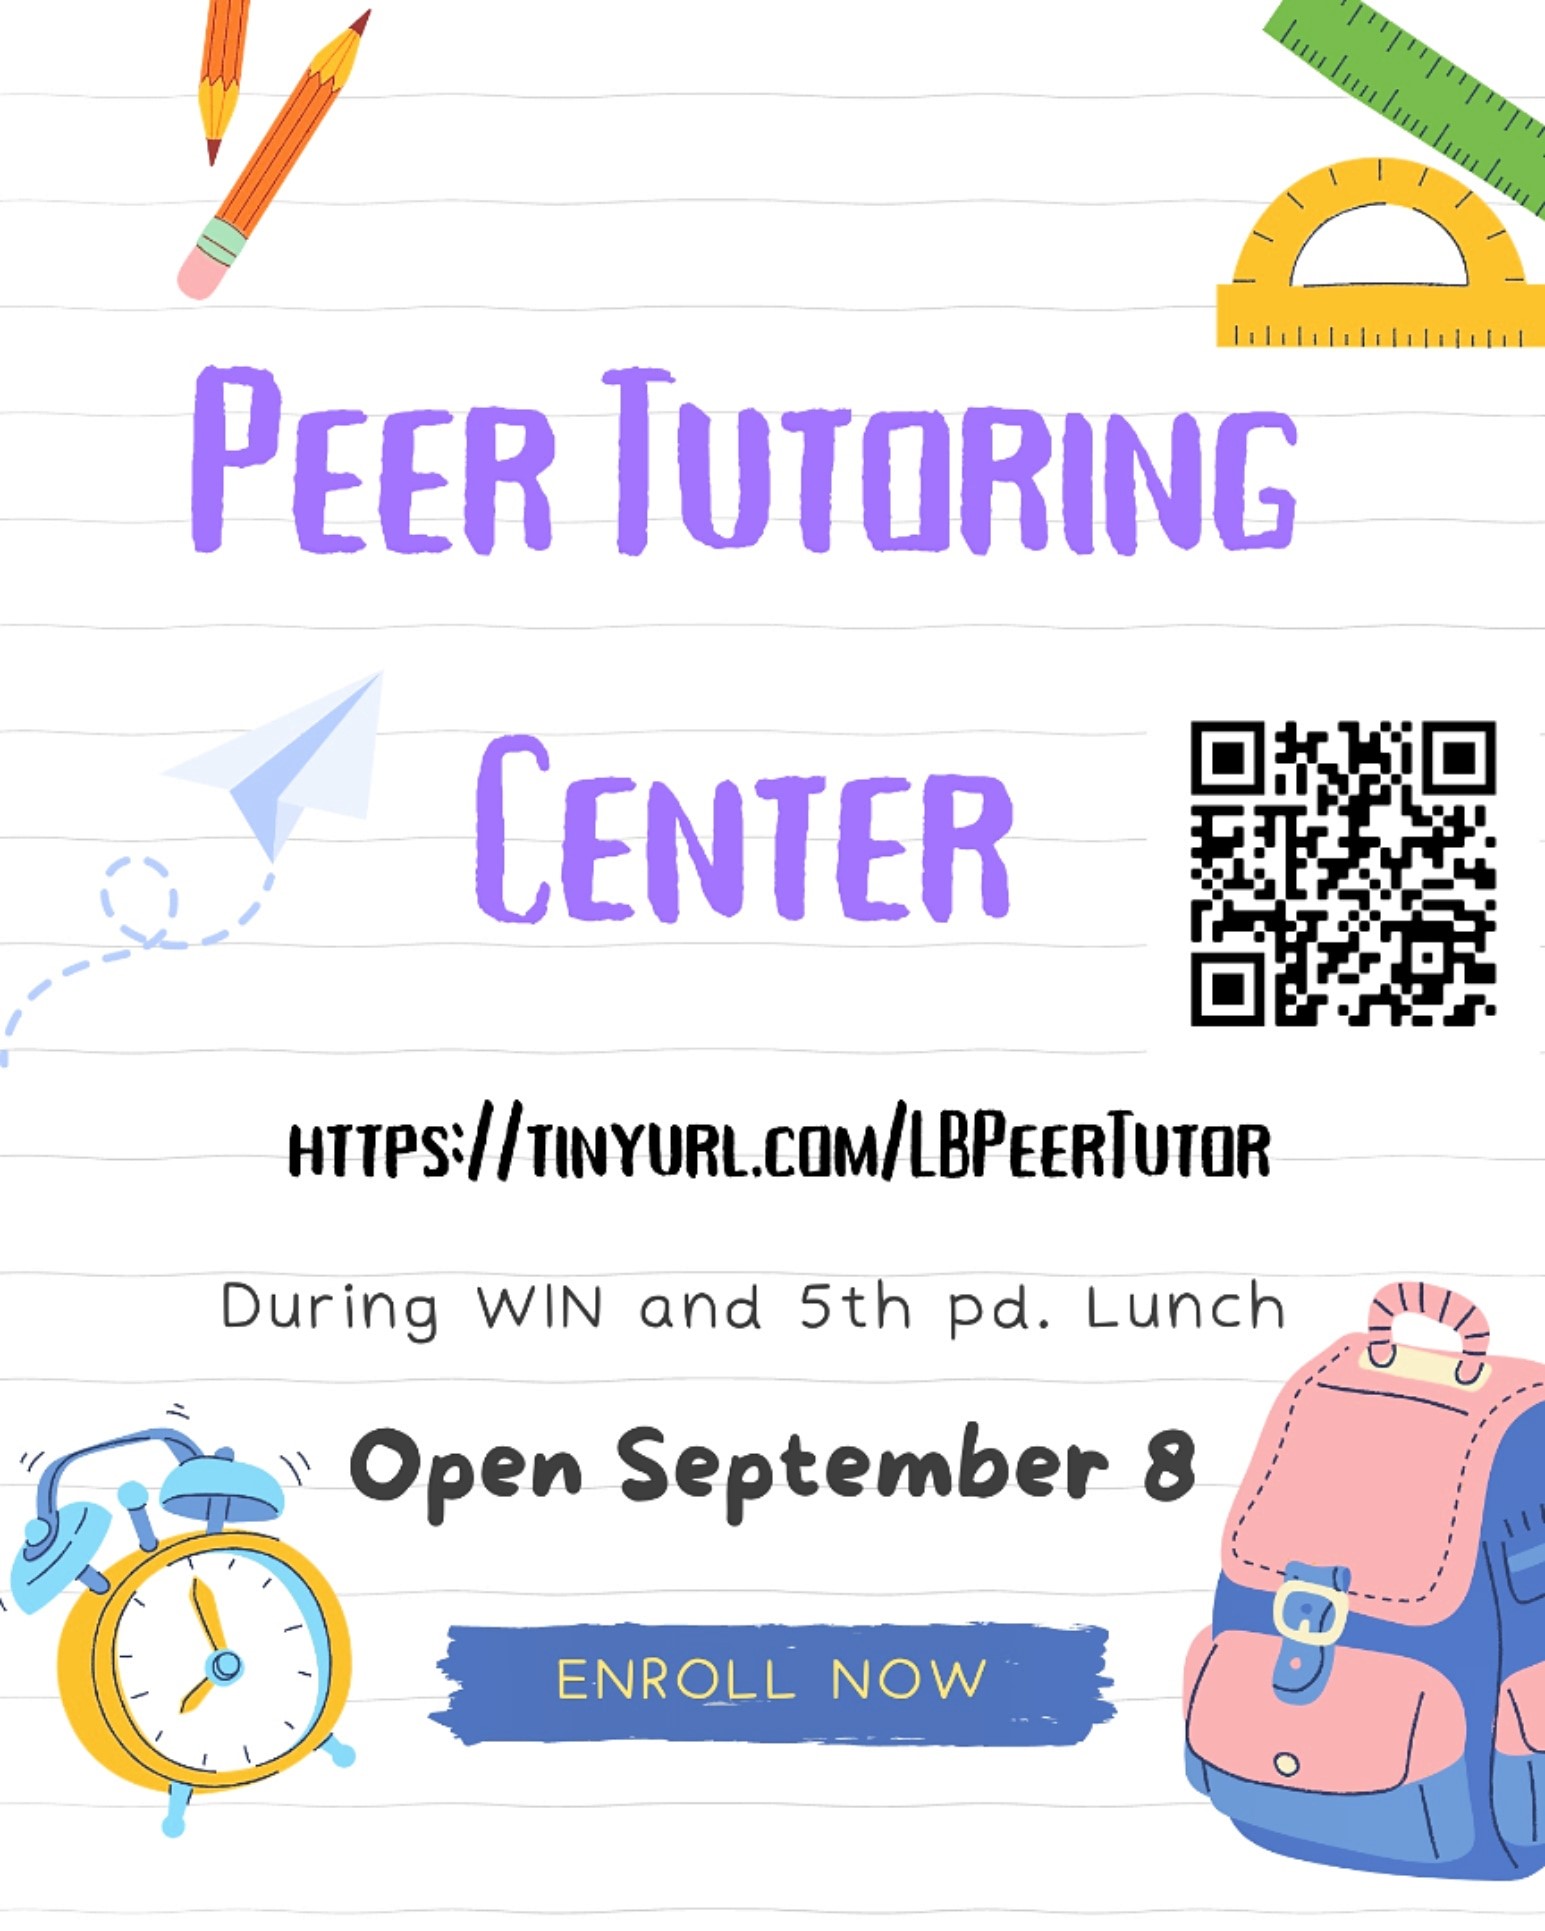 Peer tutoring flier